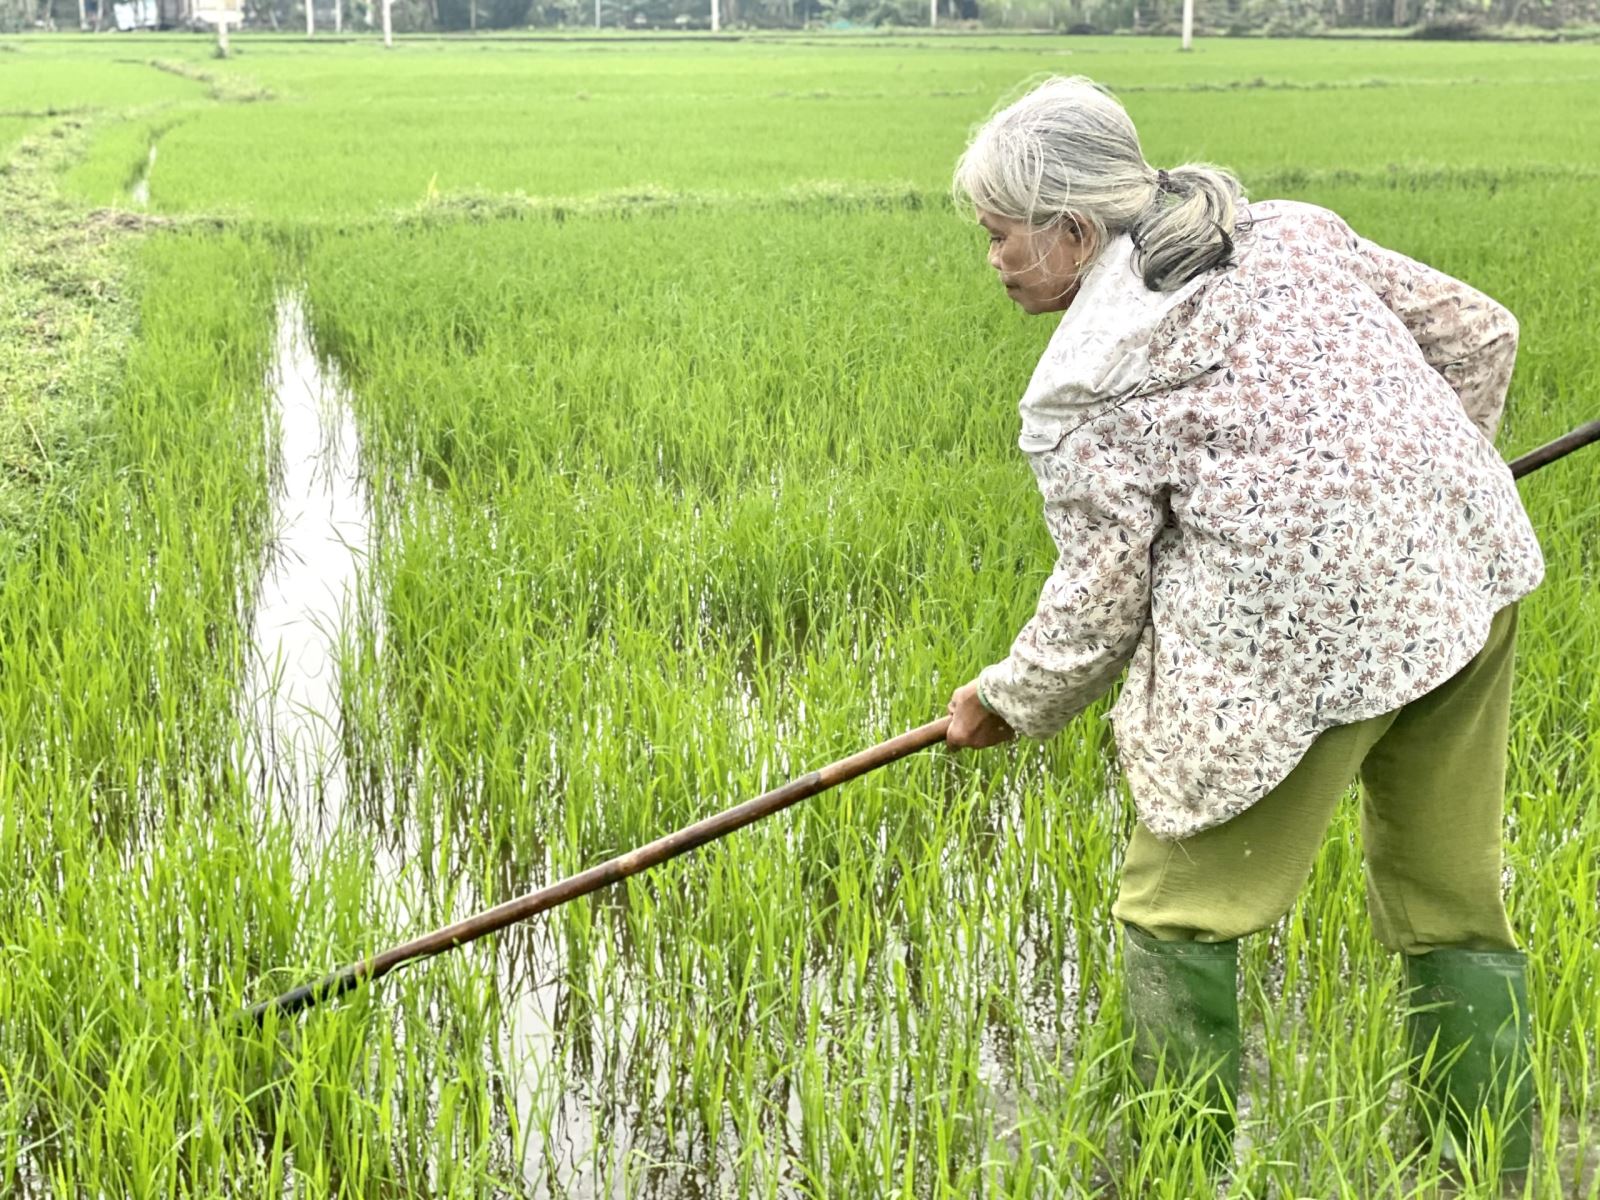 Người nông dân Quảng Nam trong những năm qua đã tích cực xây dựng mô hình cánh đồng mẫu lớn để liên kết với doanh nghiệp sản xuất giống lúa hàng hóa và lúa thương phẩm chất lượng cao.